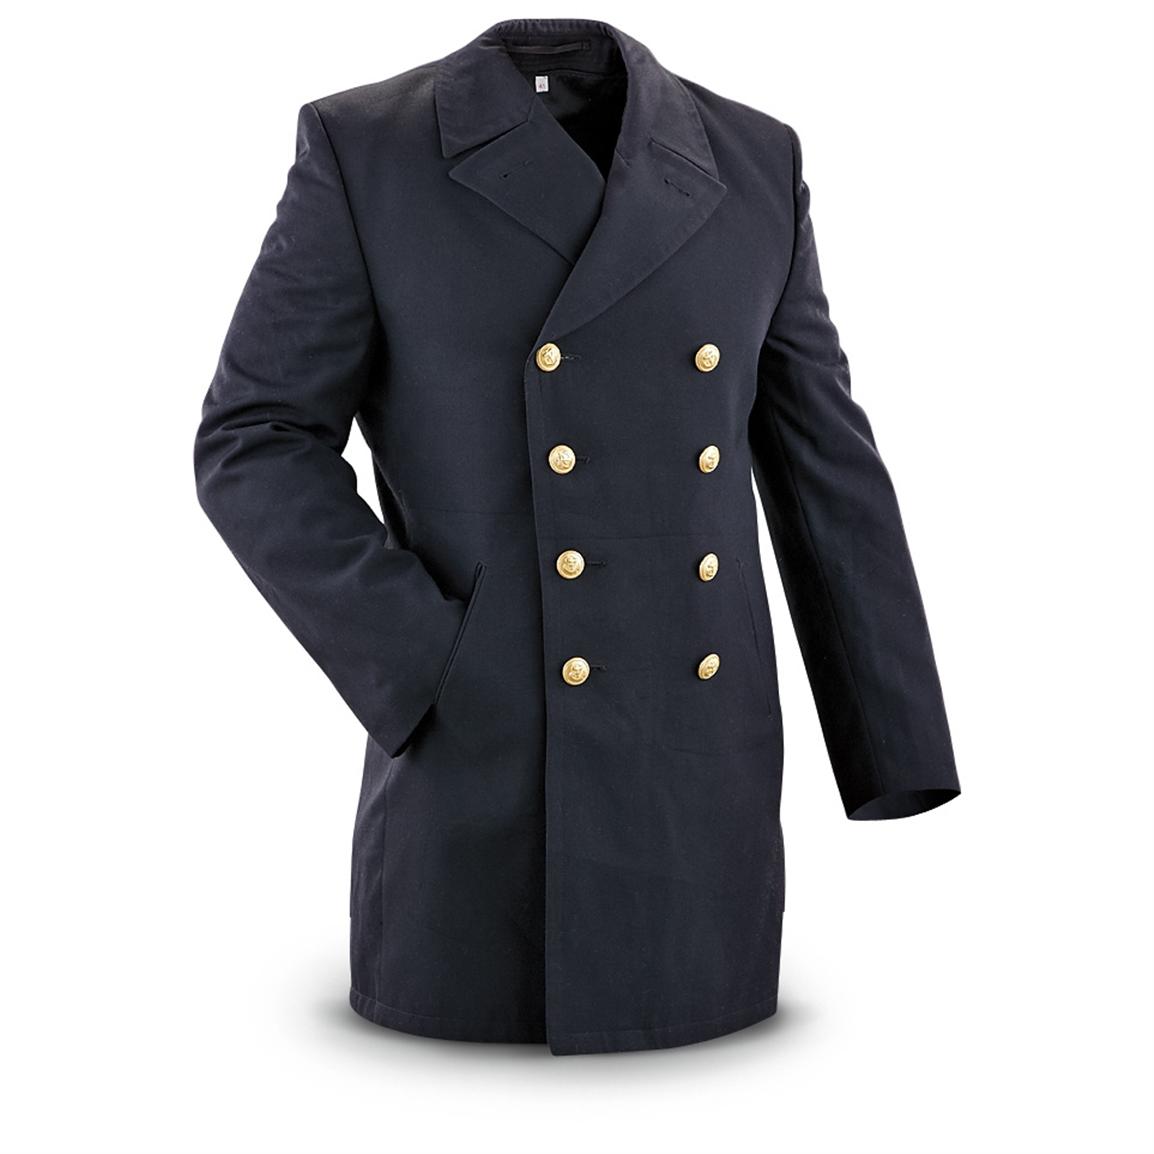 Used German Military Surplus Dress Jacket, Black - 206129, Military ...